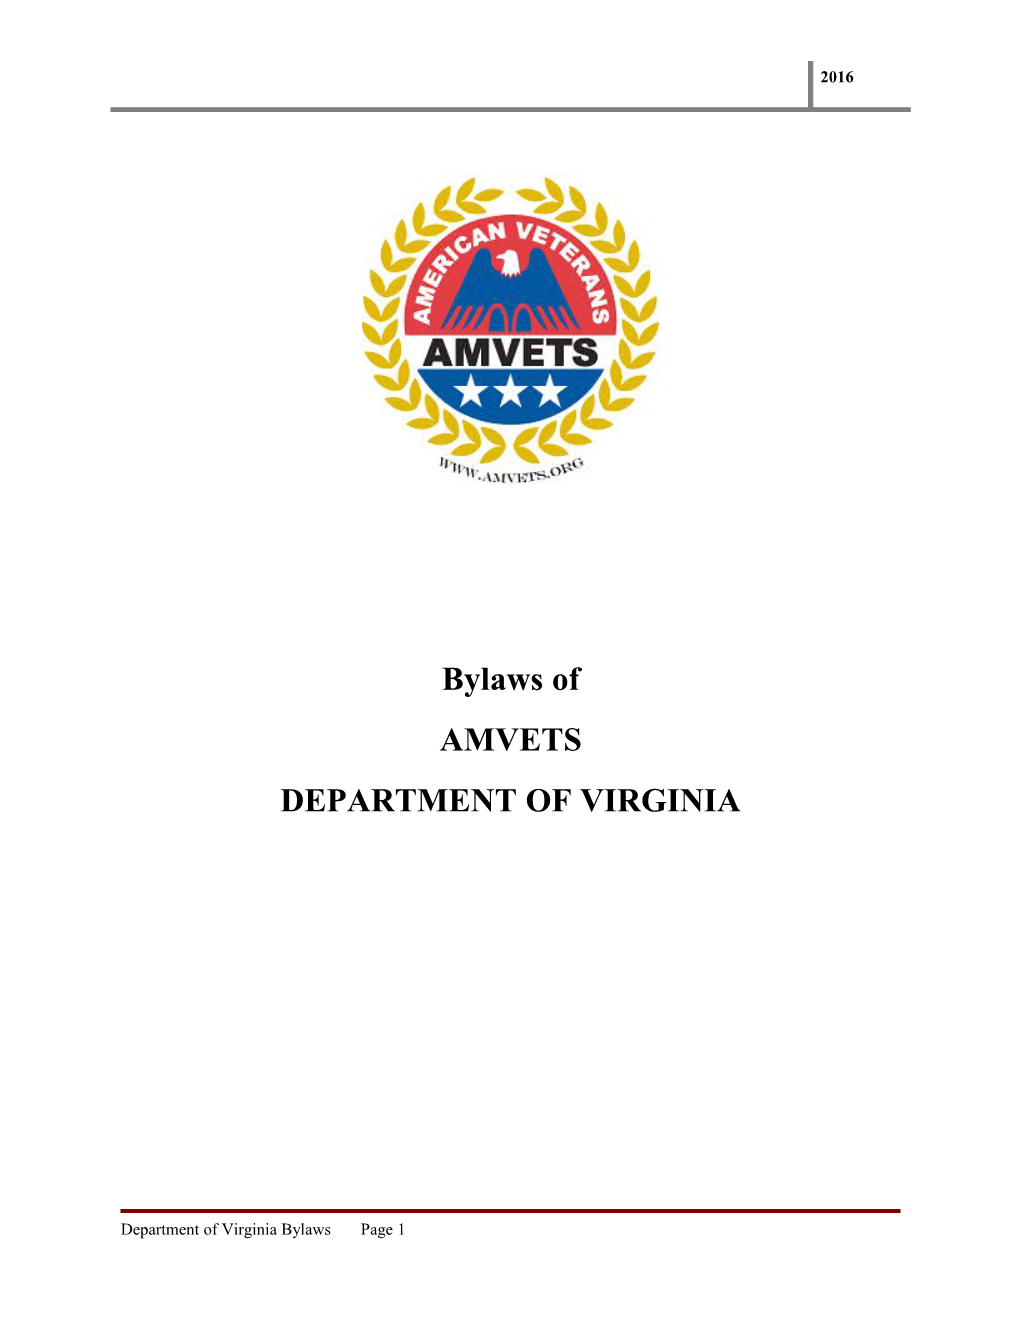 Department of Virginia